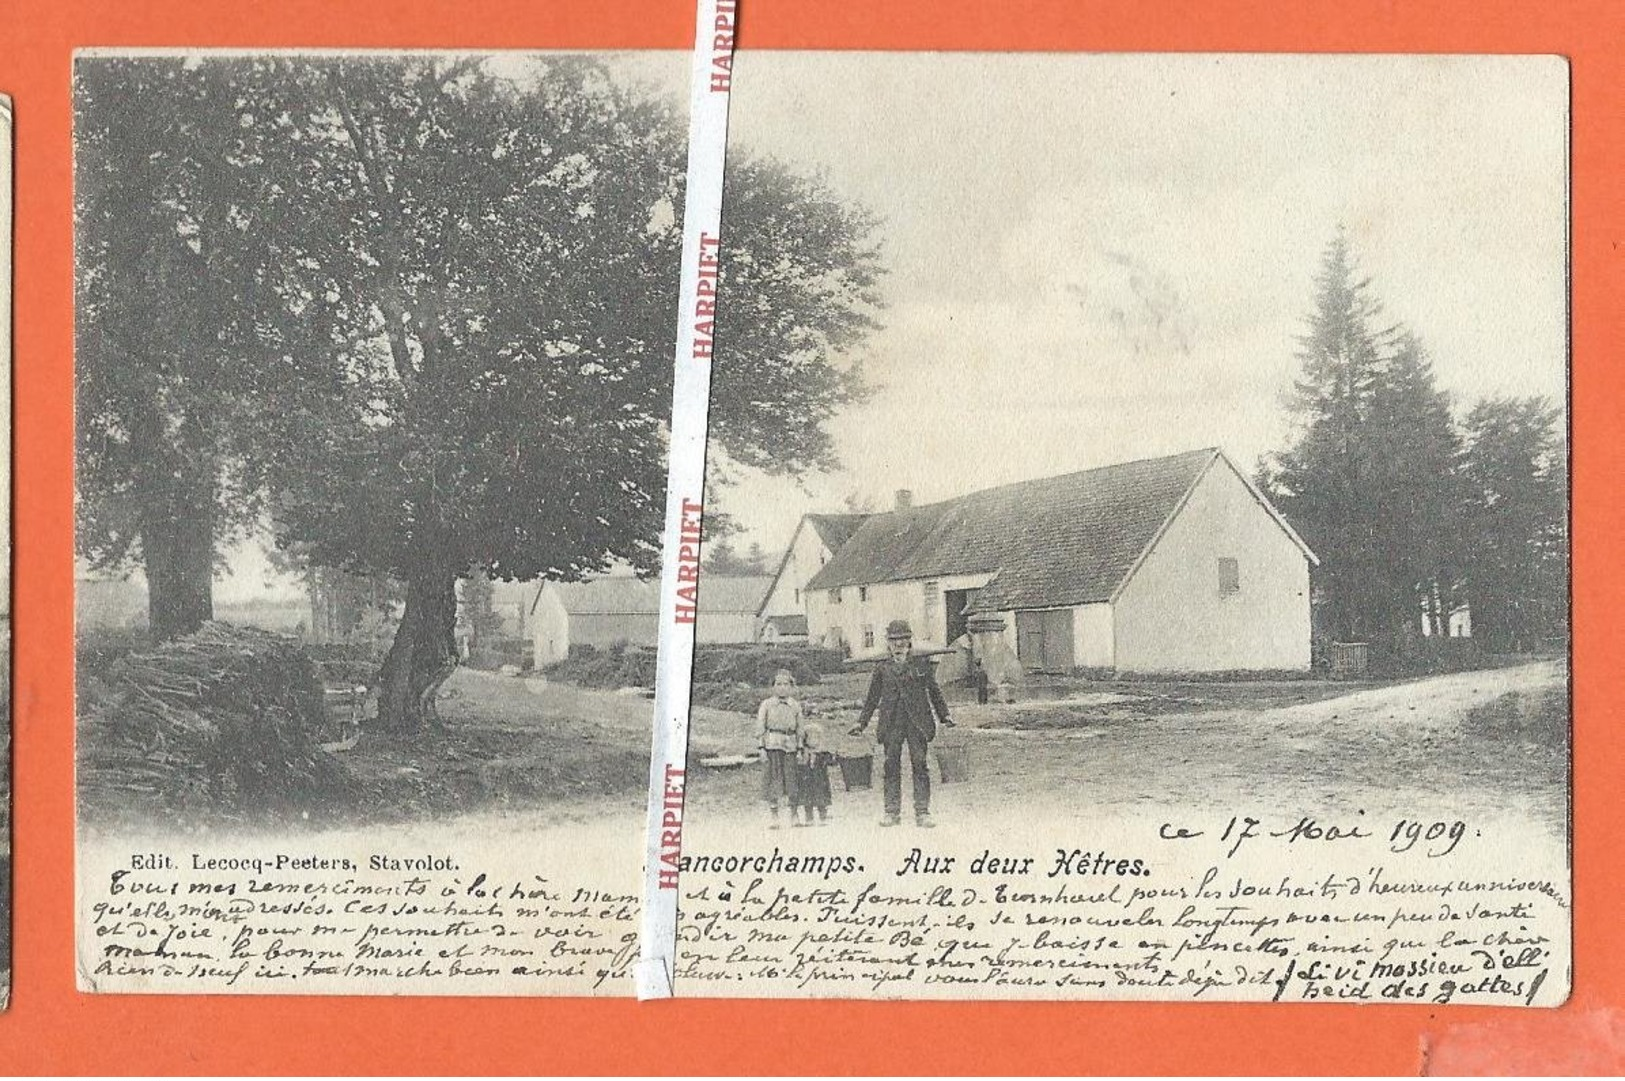 FRANCORCHAMPS  -  Magnifique lot de 36  cartes postales anciennes